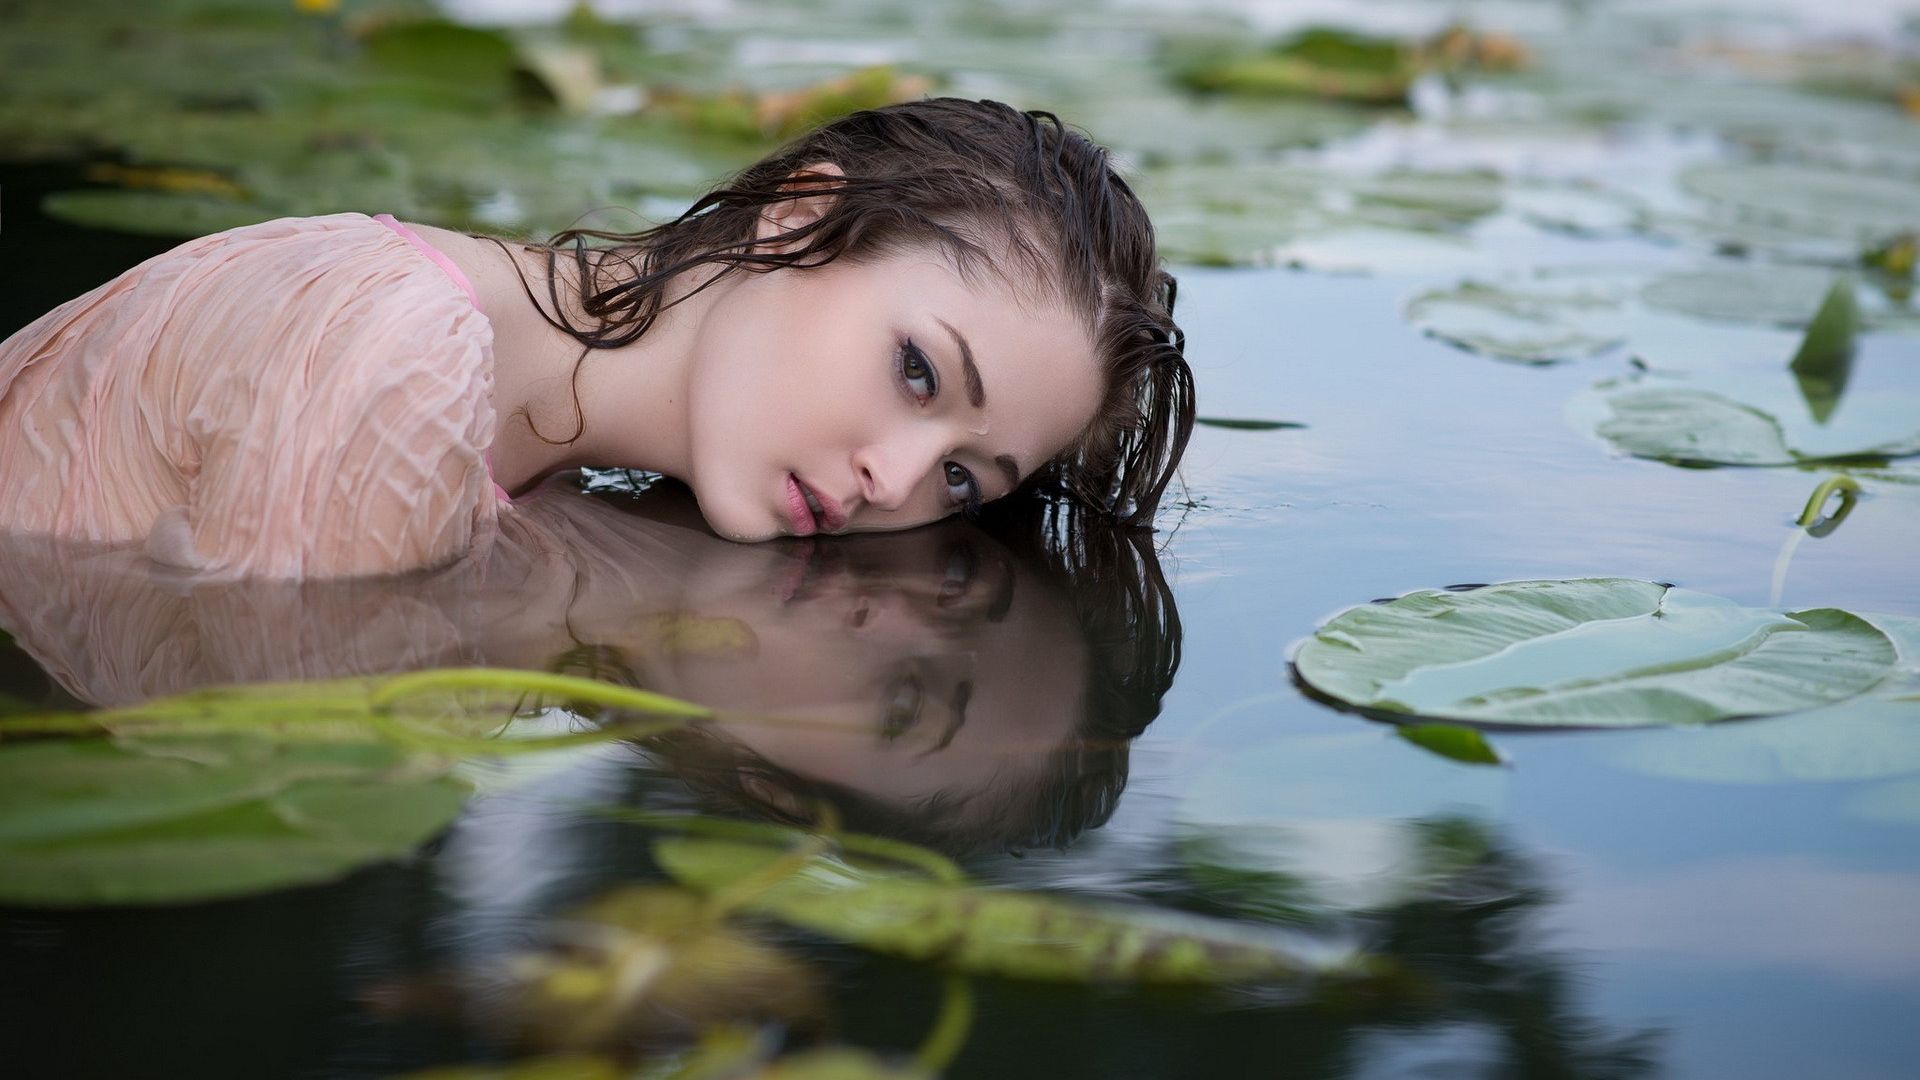 Wallpaper Asian beautiful girl model in pond